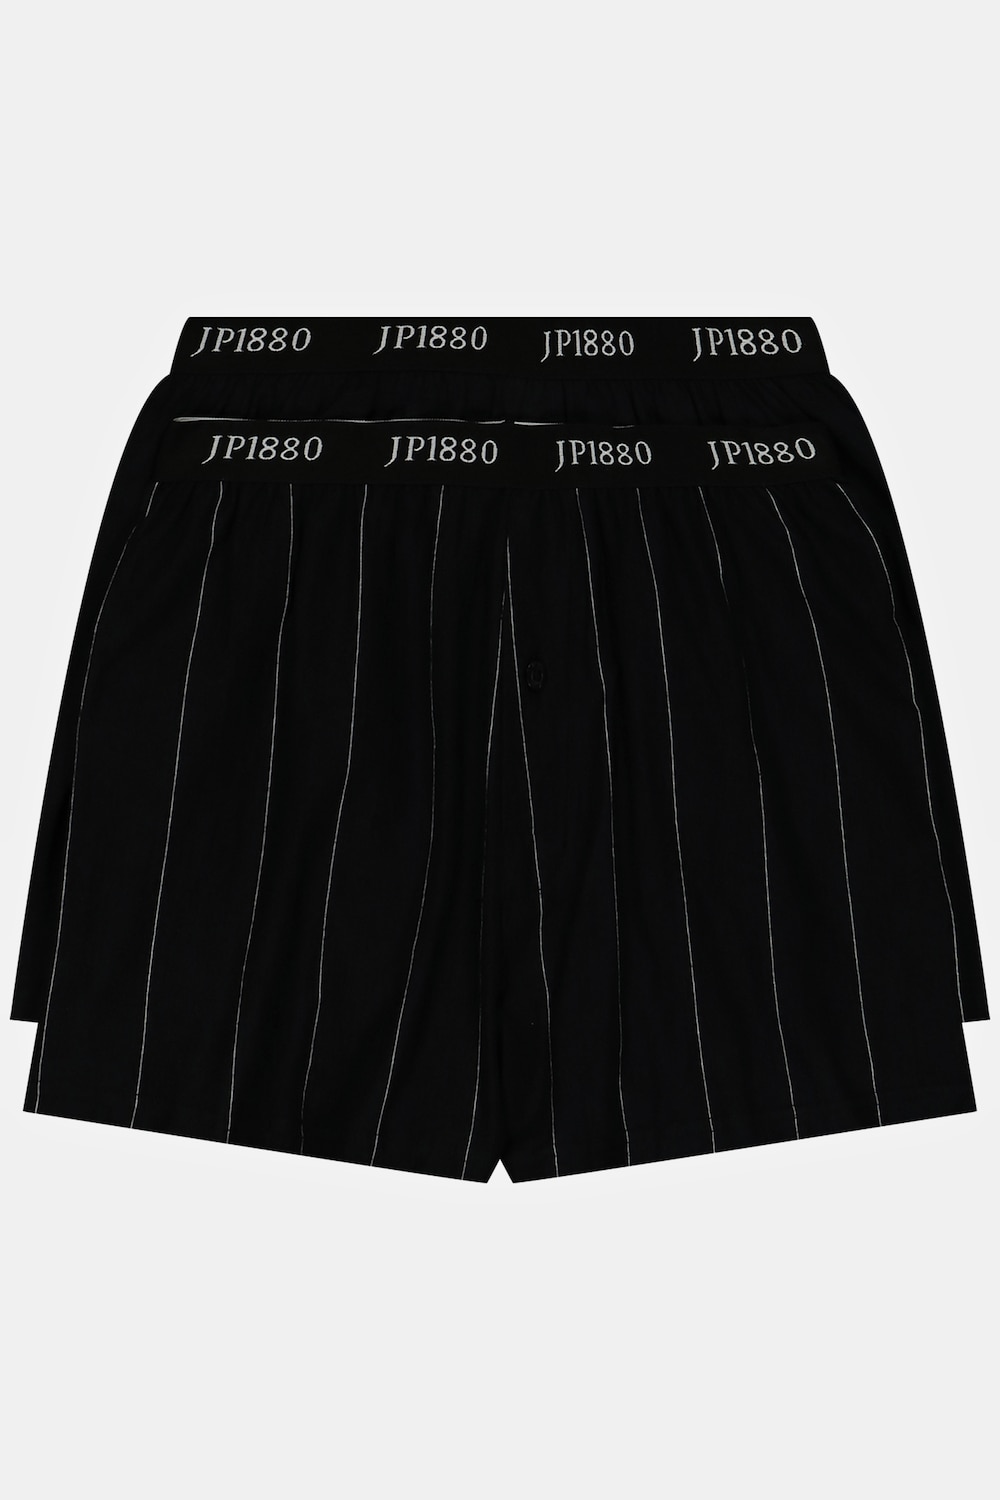 grandes tailles lot de 2 boxers flexnamic®, hommes, noir, taille: 6xl, coton, jp1880